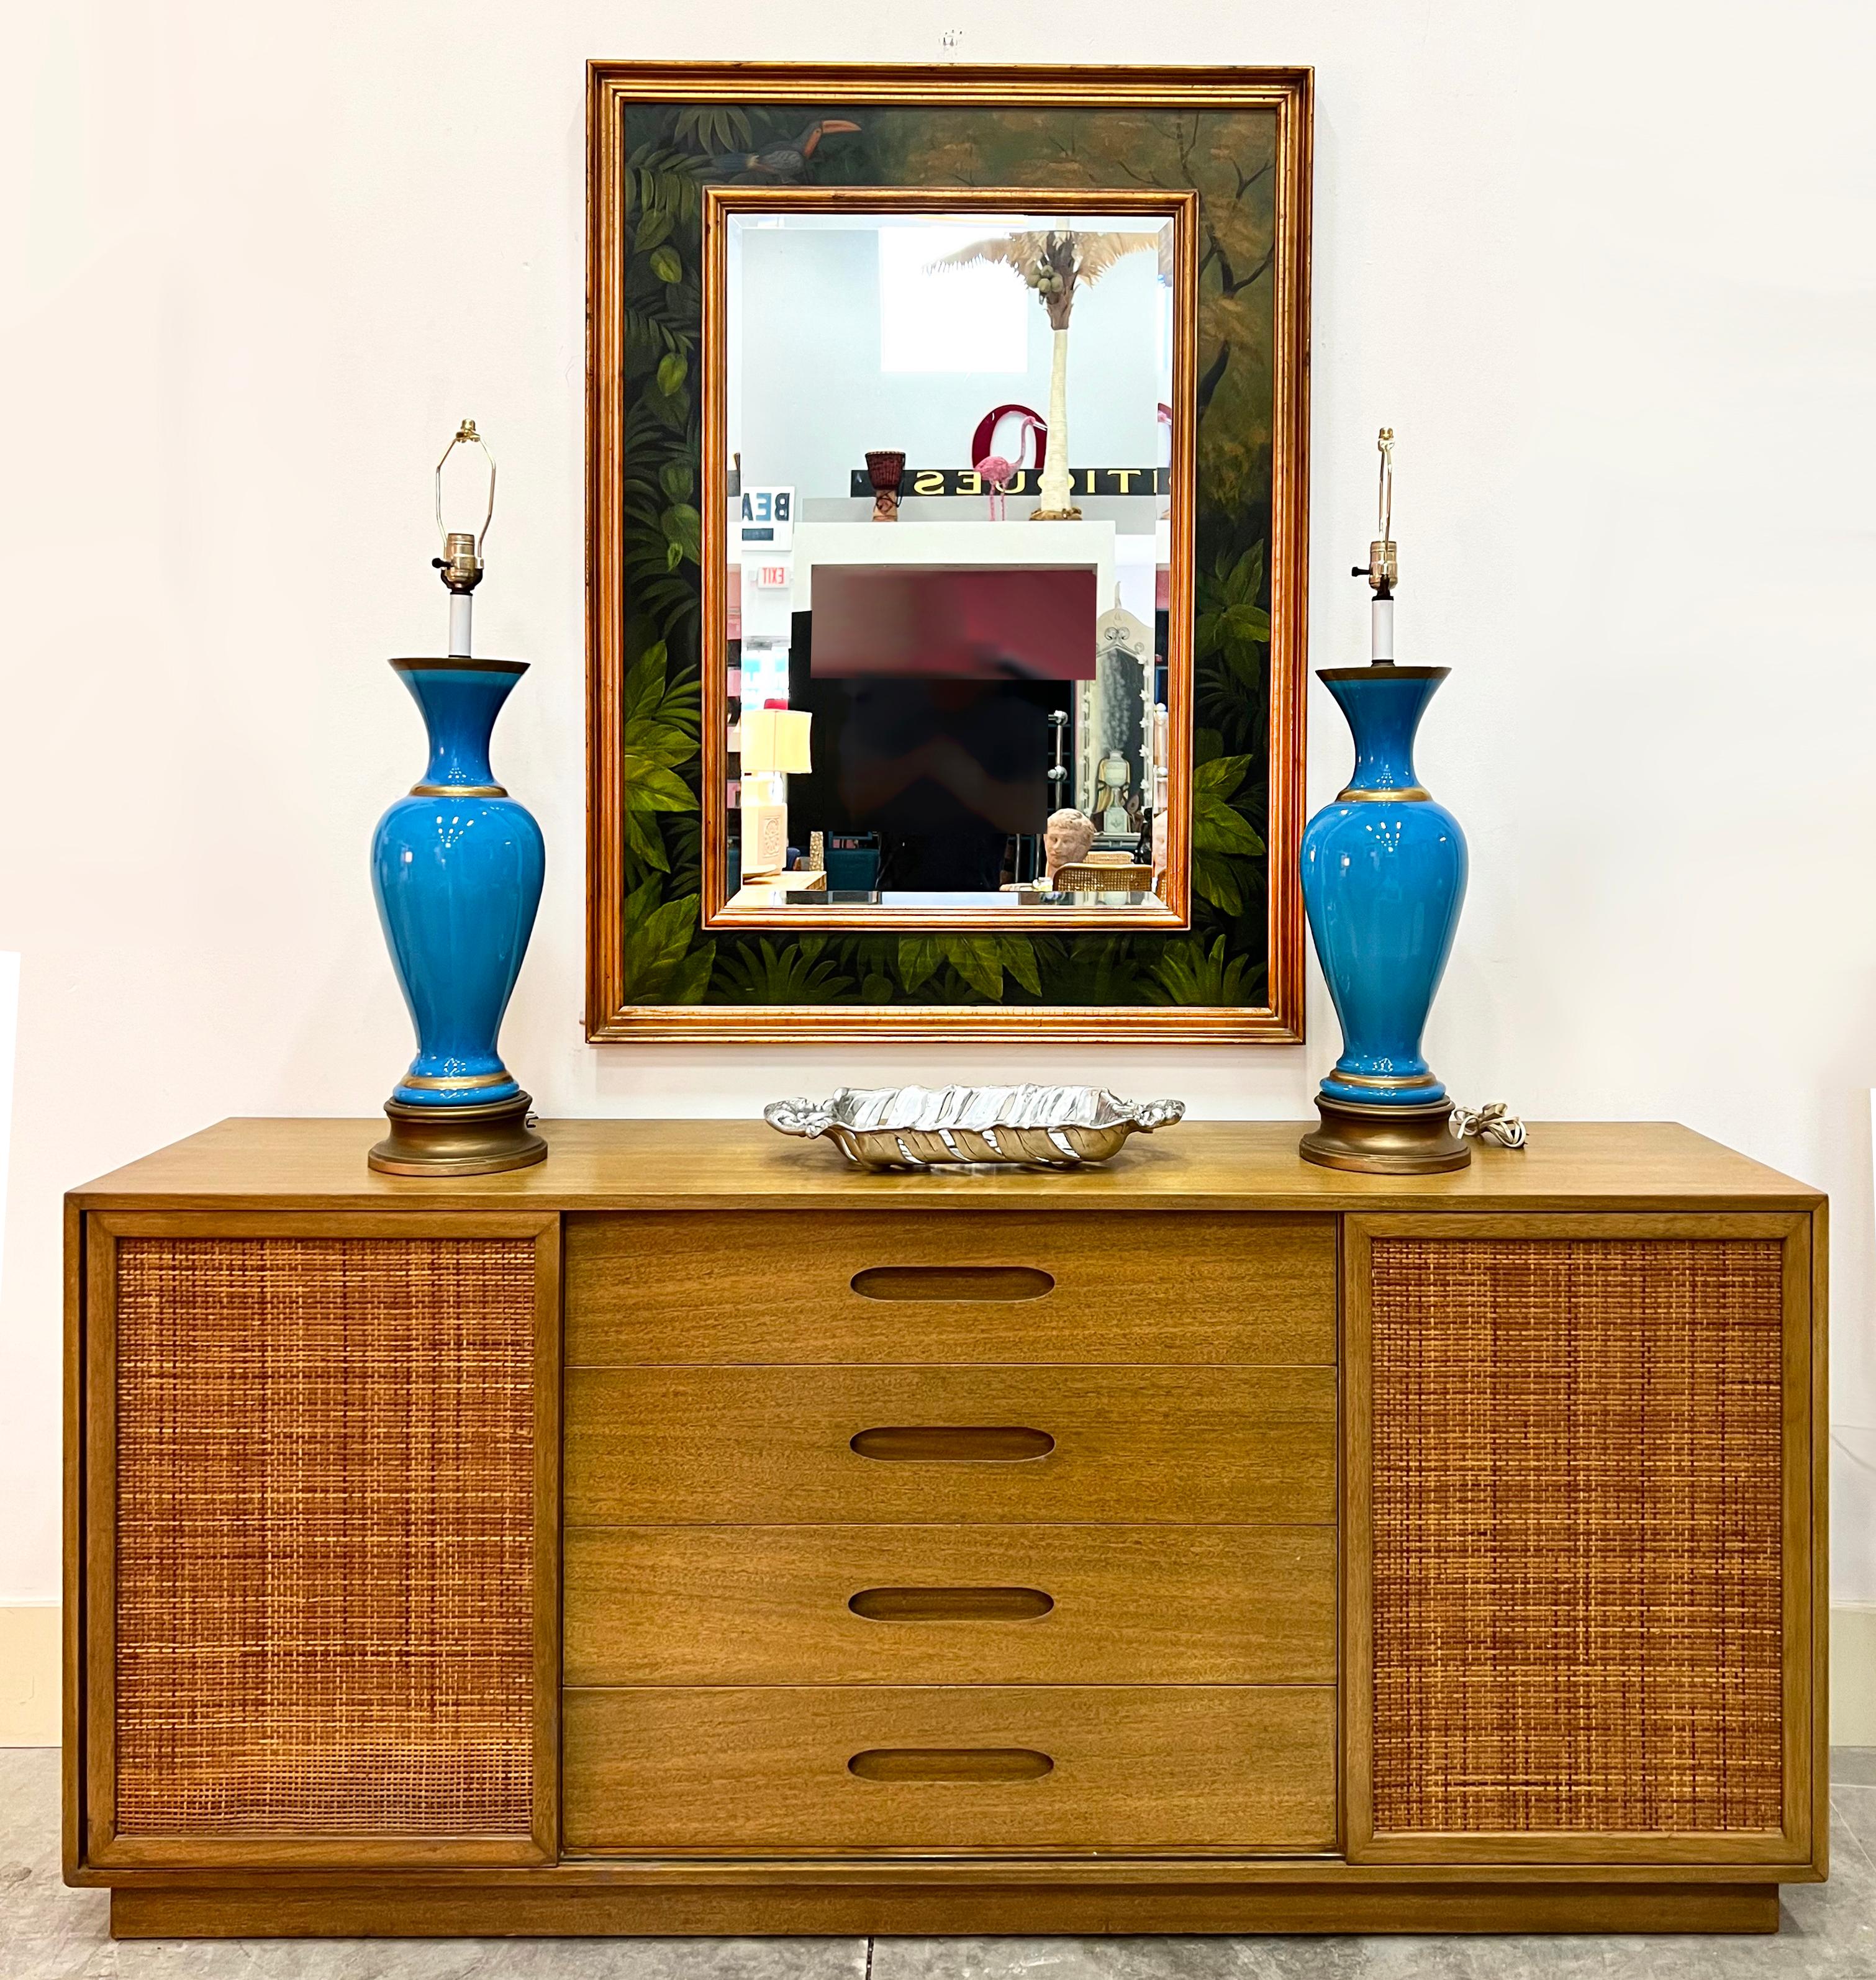 Vintage Palm Beach Regency Hand gemalten abgeschrägten Spiegel, Tukan mit Laub

Zum Verkauf angeboten wird ein Vintage Palm Beach Regency handgemalten abgeschrägten Spiegel. Der Rahmen ist aus vergoldetem Holz und zart bemalt mit tollen Details von